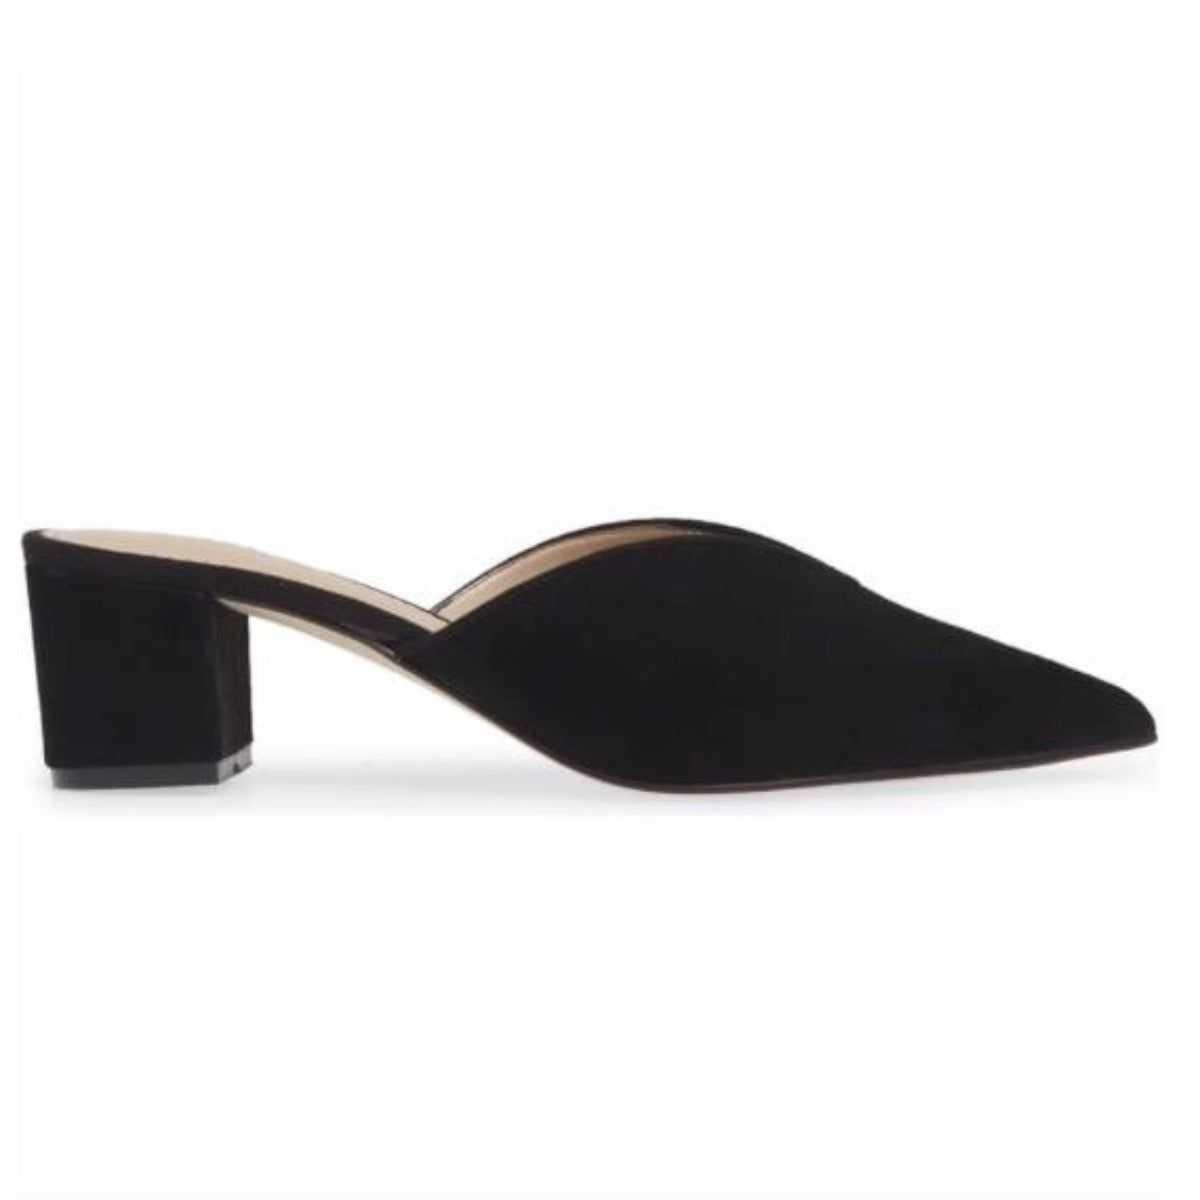 Black sandal heels  with slip-on design - side view